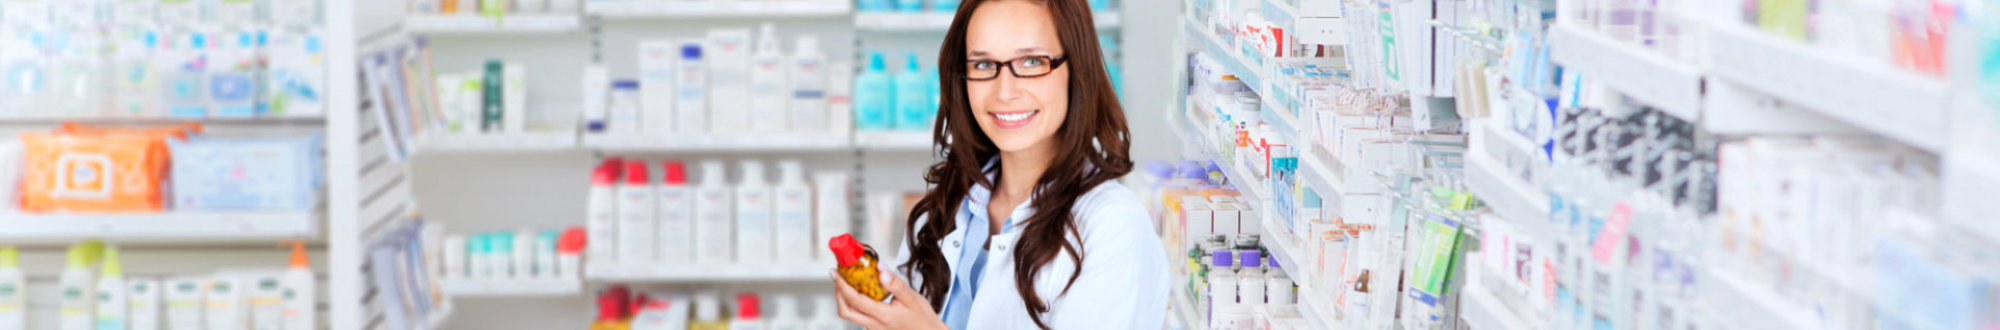 female pharmacist smiling